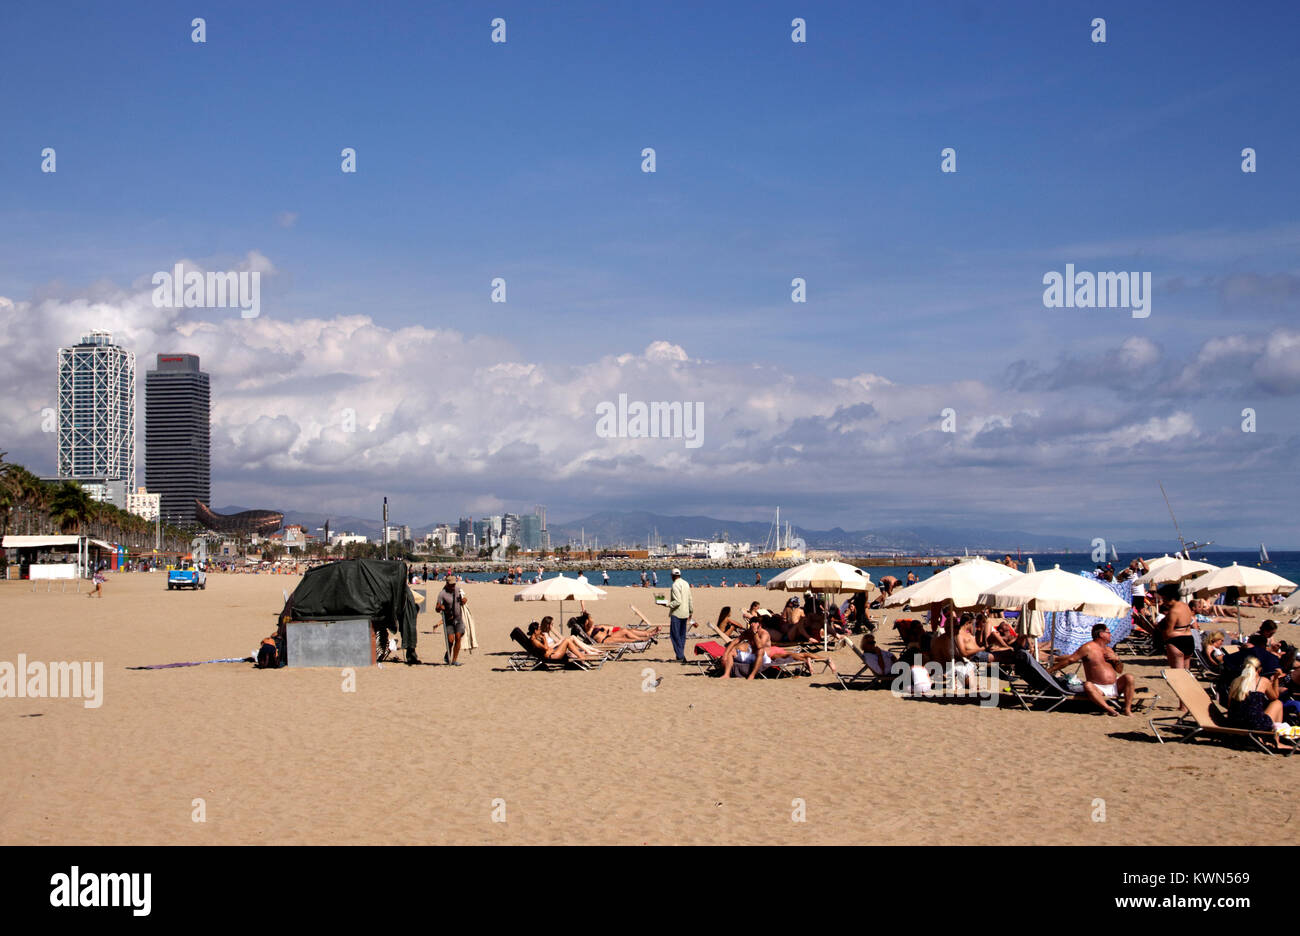 Sunbathing on Barcelona beach Autumn 2017 Stock Photo